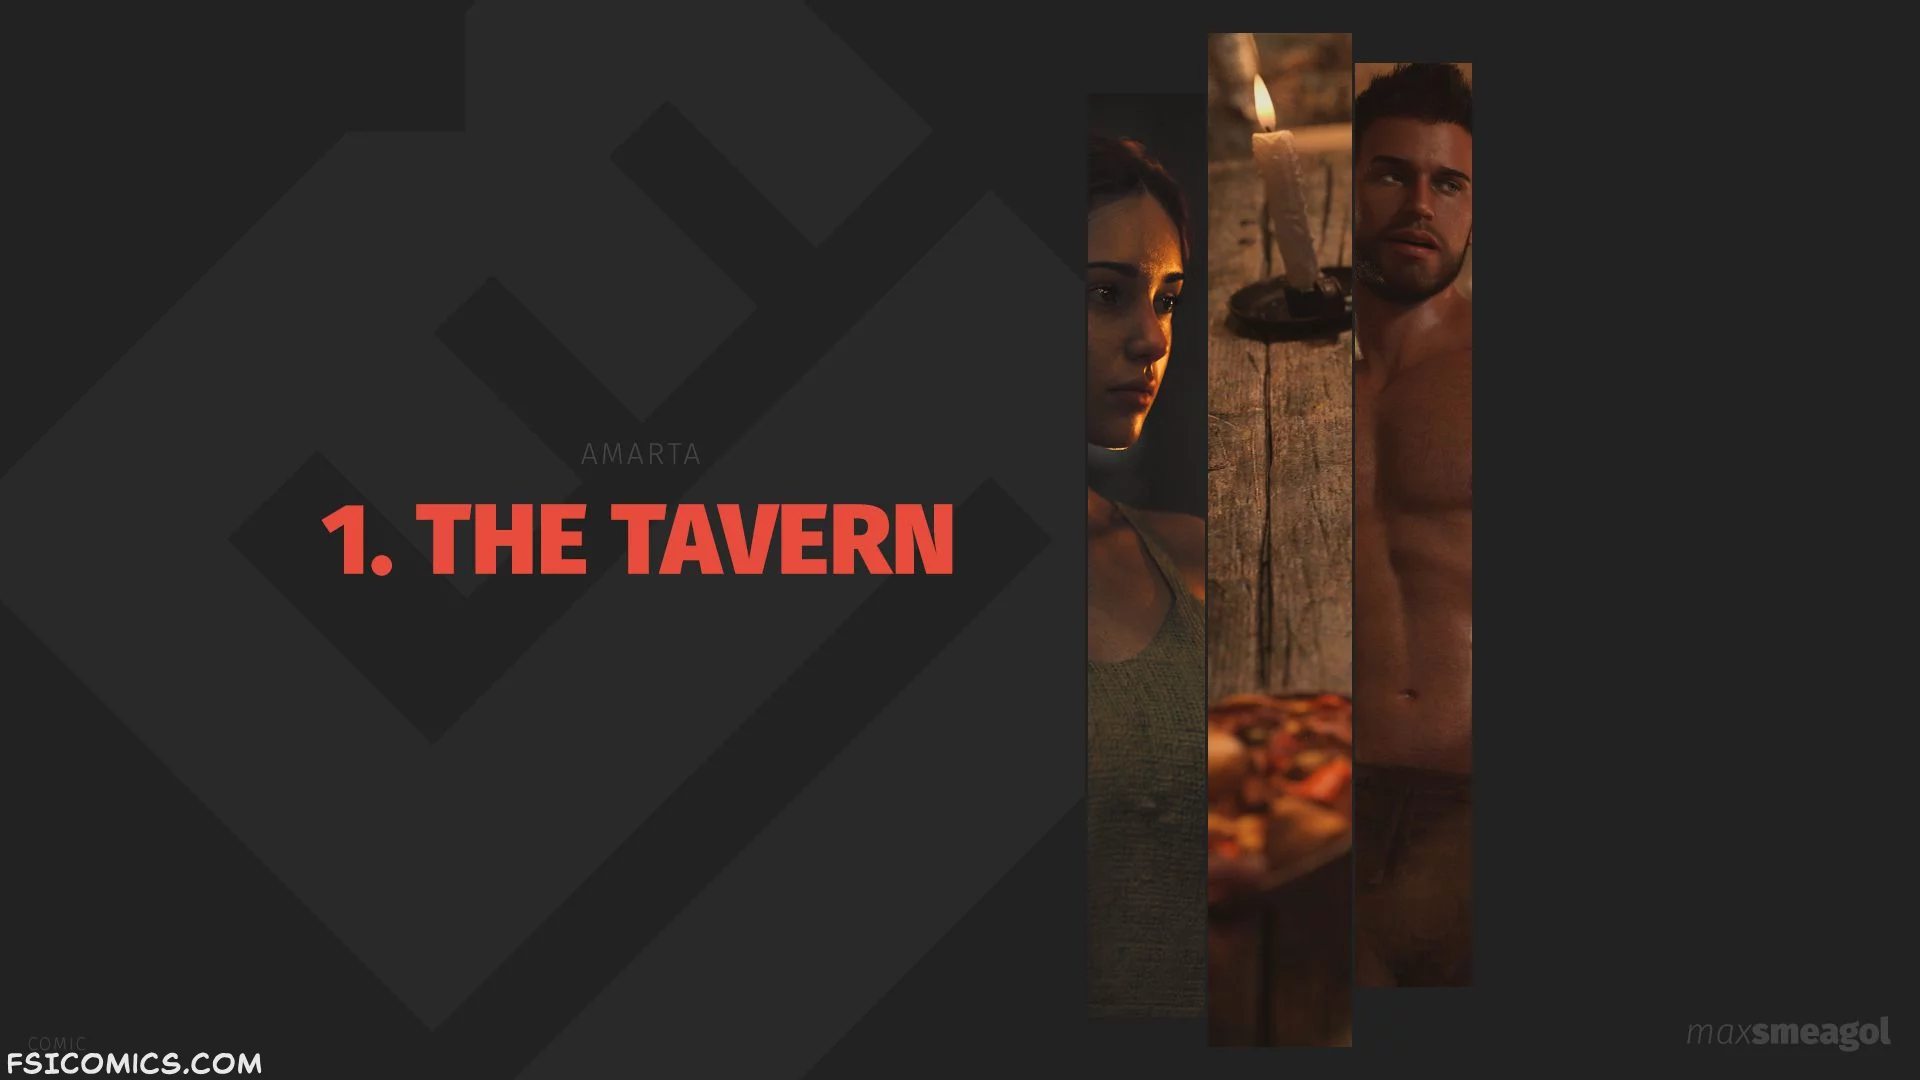 The Tavern Chapter 1 - MaxSmeagol - 47 - FSIComics